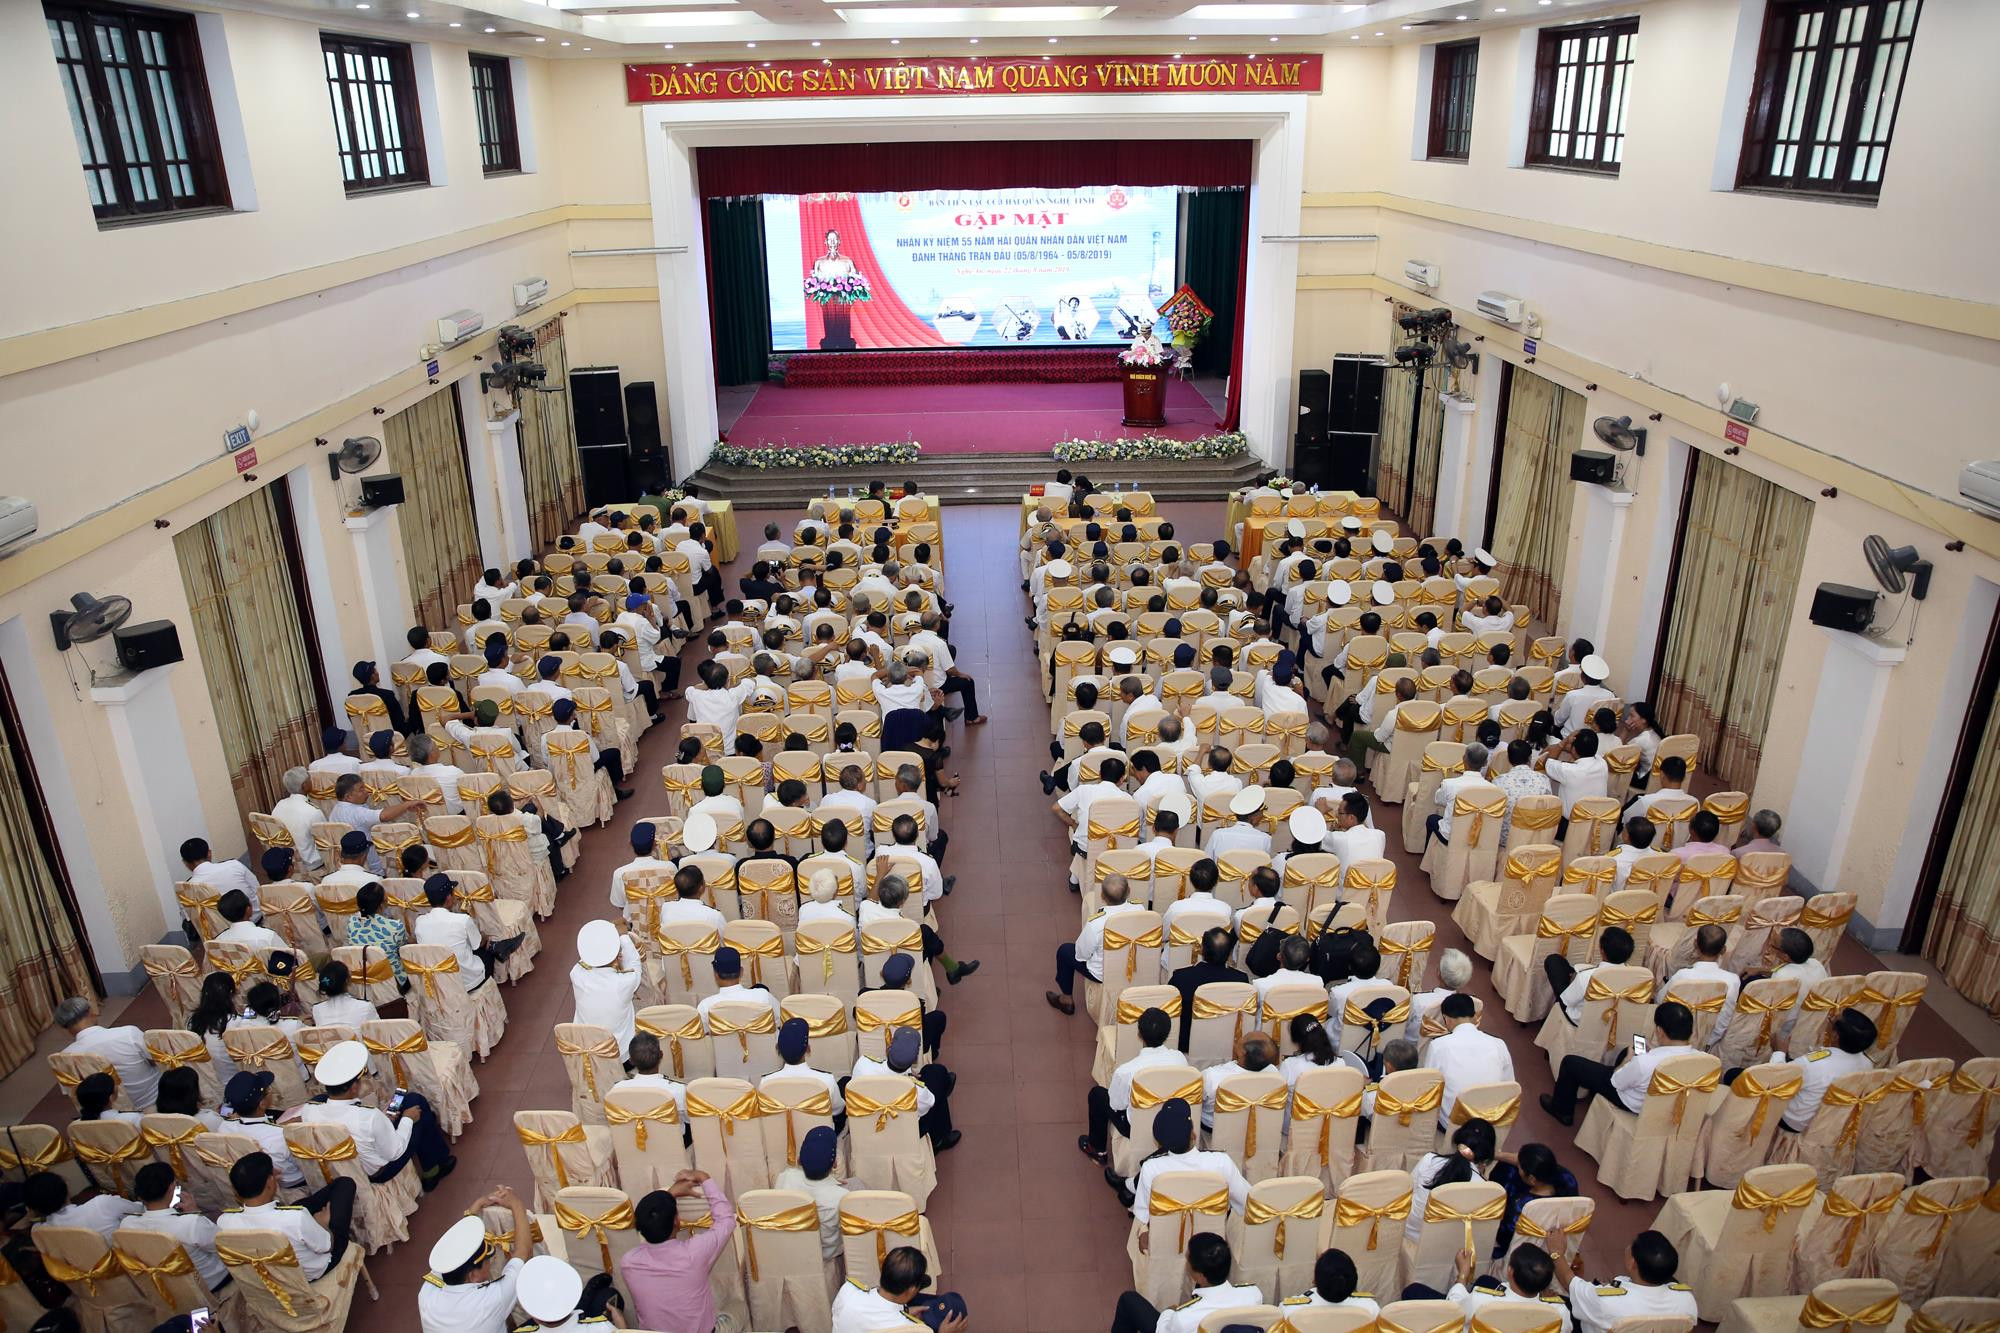 Tham dự buổi gặp mặt có các đồng chí đại diện các ban, ngành cấp tỉnh; các đồng chí trong Ban lien lạc và gần 300 đại biểu đại diện cho toàn bộ CCB Hải quân ở địa bàn hai huyện Nghệ An và Hà Tĩnh.